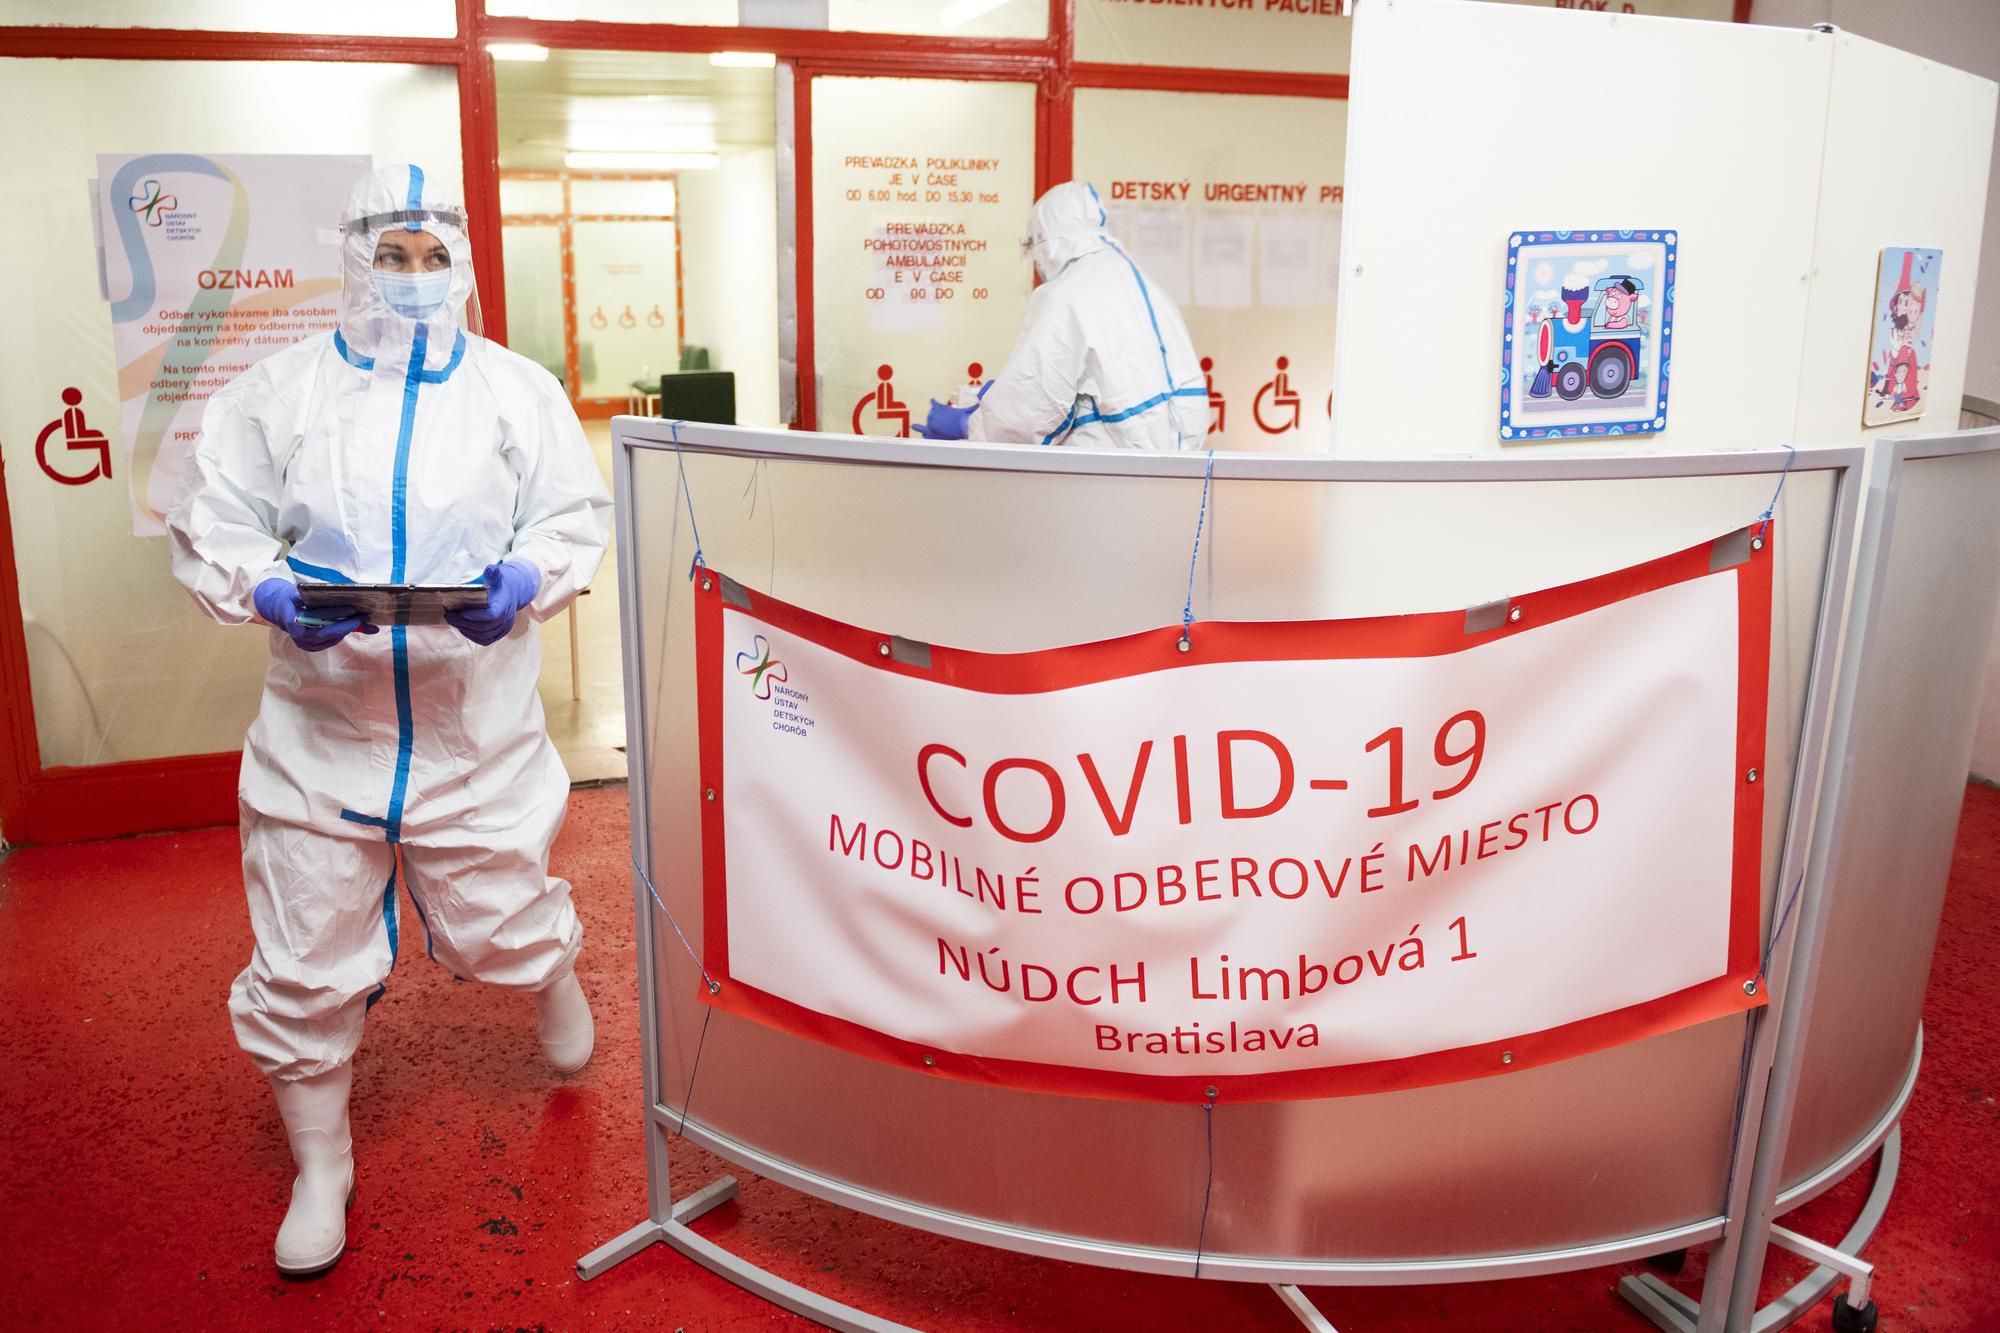 Bývalá tenistka Dominika Navara Cibulková (druhá vľavo) v ochrannom obleku pomáha počas testovania na ochorenie COVID-19 na mobilnom odberovom mieste (MOM) v Národnom ústave detských chorôb (NÚDCH) v Bratislave 19. januára 2021.